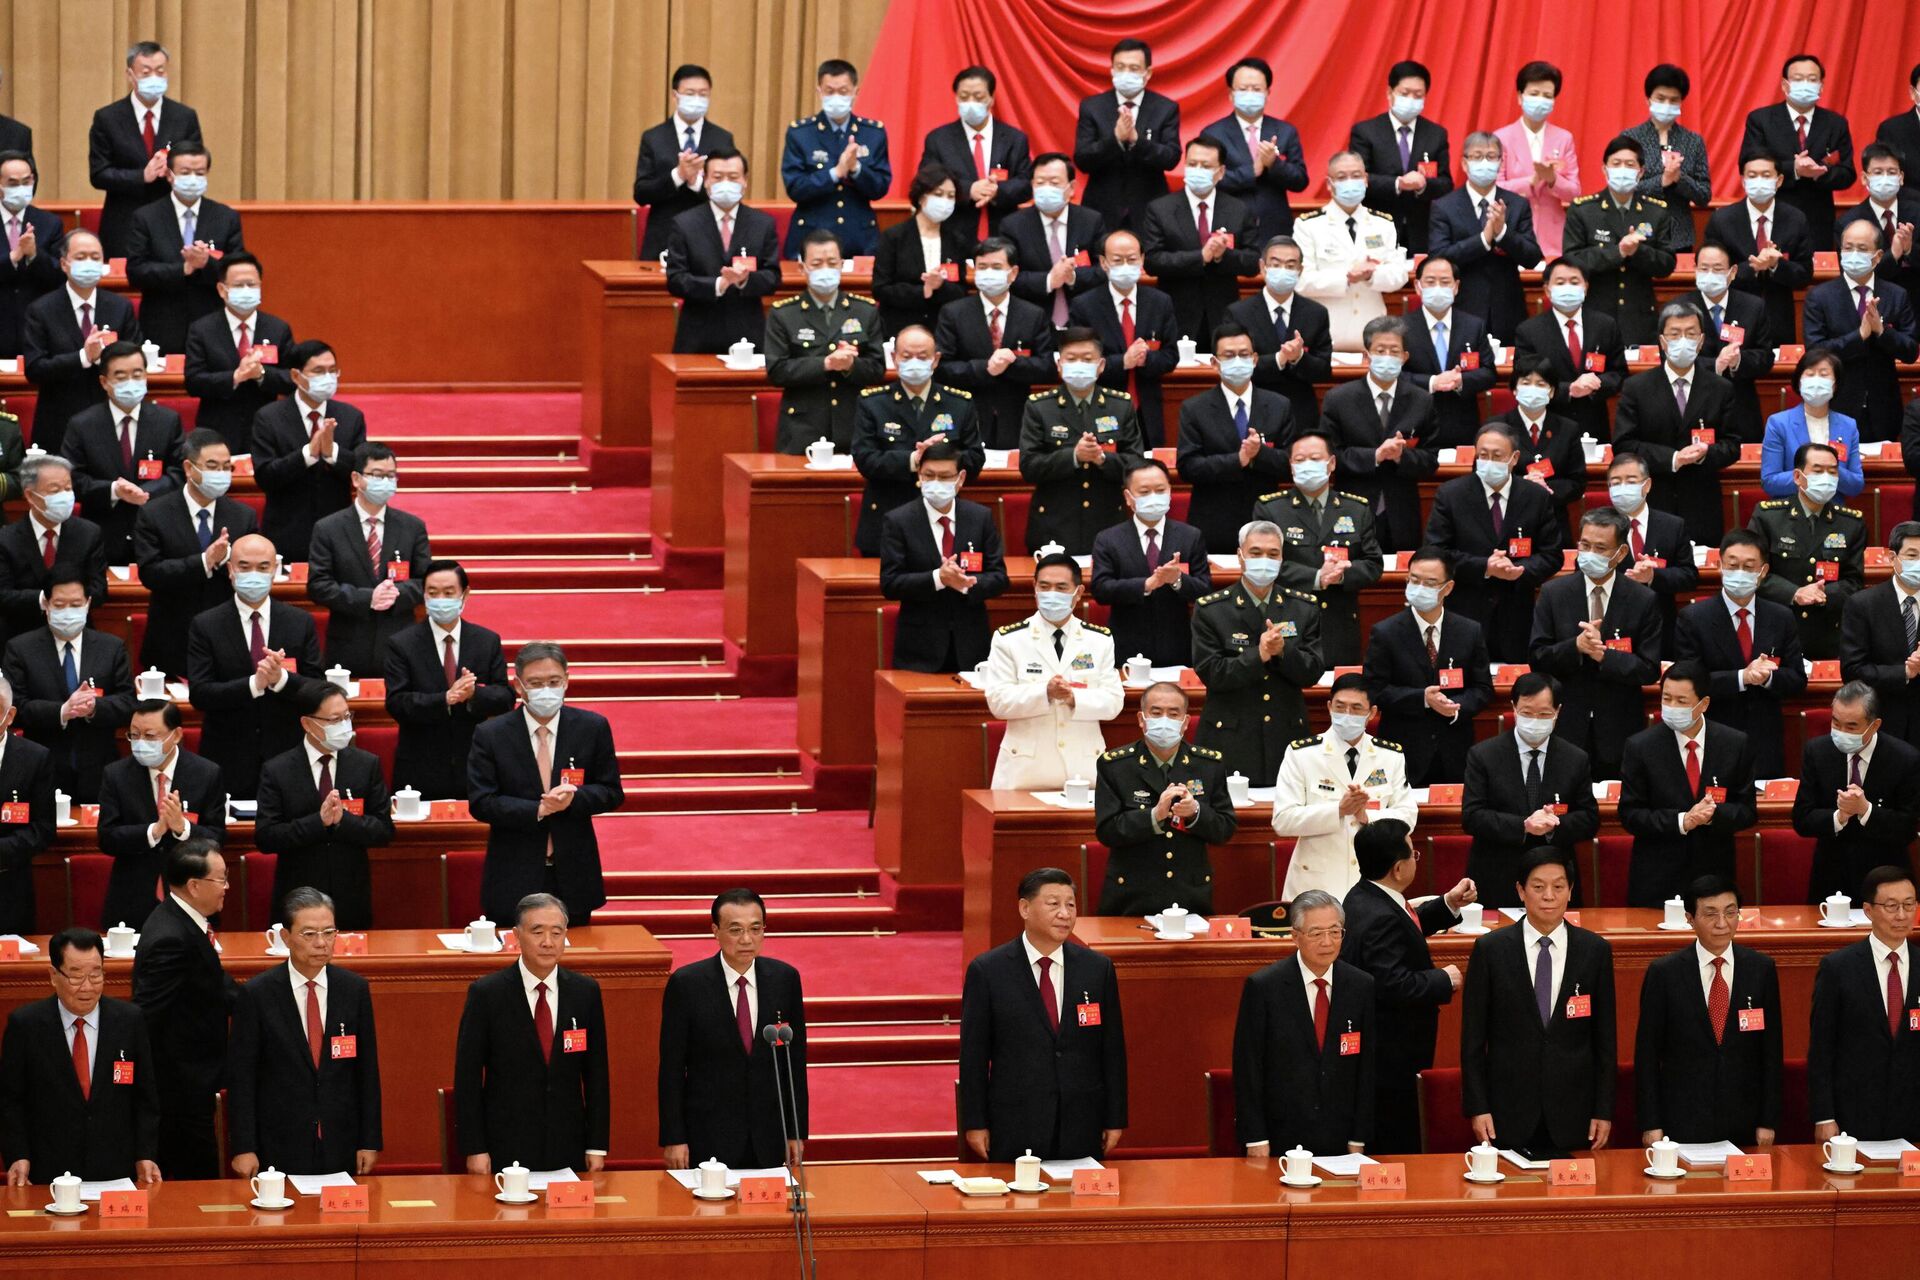 Delegati 20. kongresa Komunističke partije Kine (KPK) aplauzom pozdravljaju predsednika Si Đinpinga.  - Sputnik Srbija, 1920, 21.10.2022